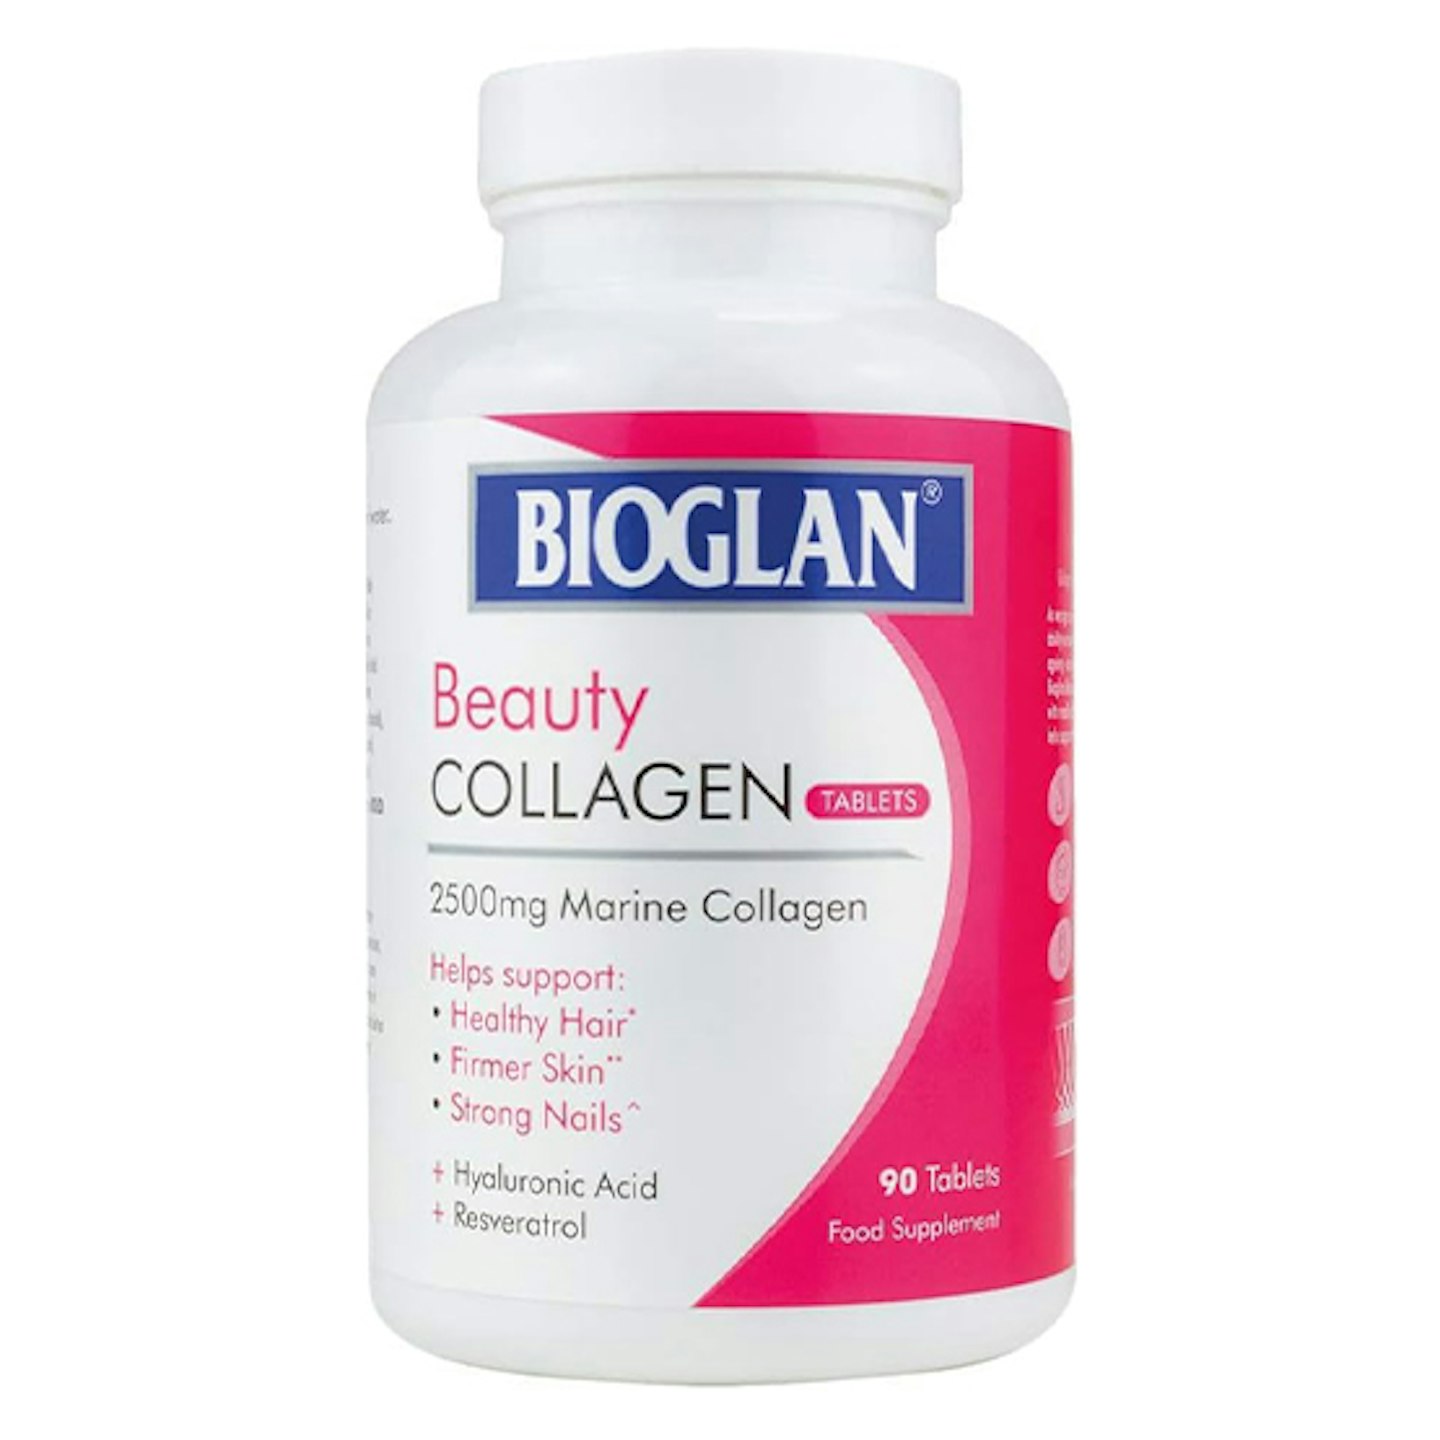 Bioglan collagen supplements